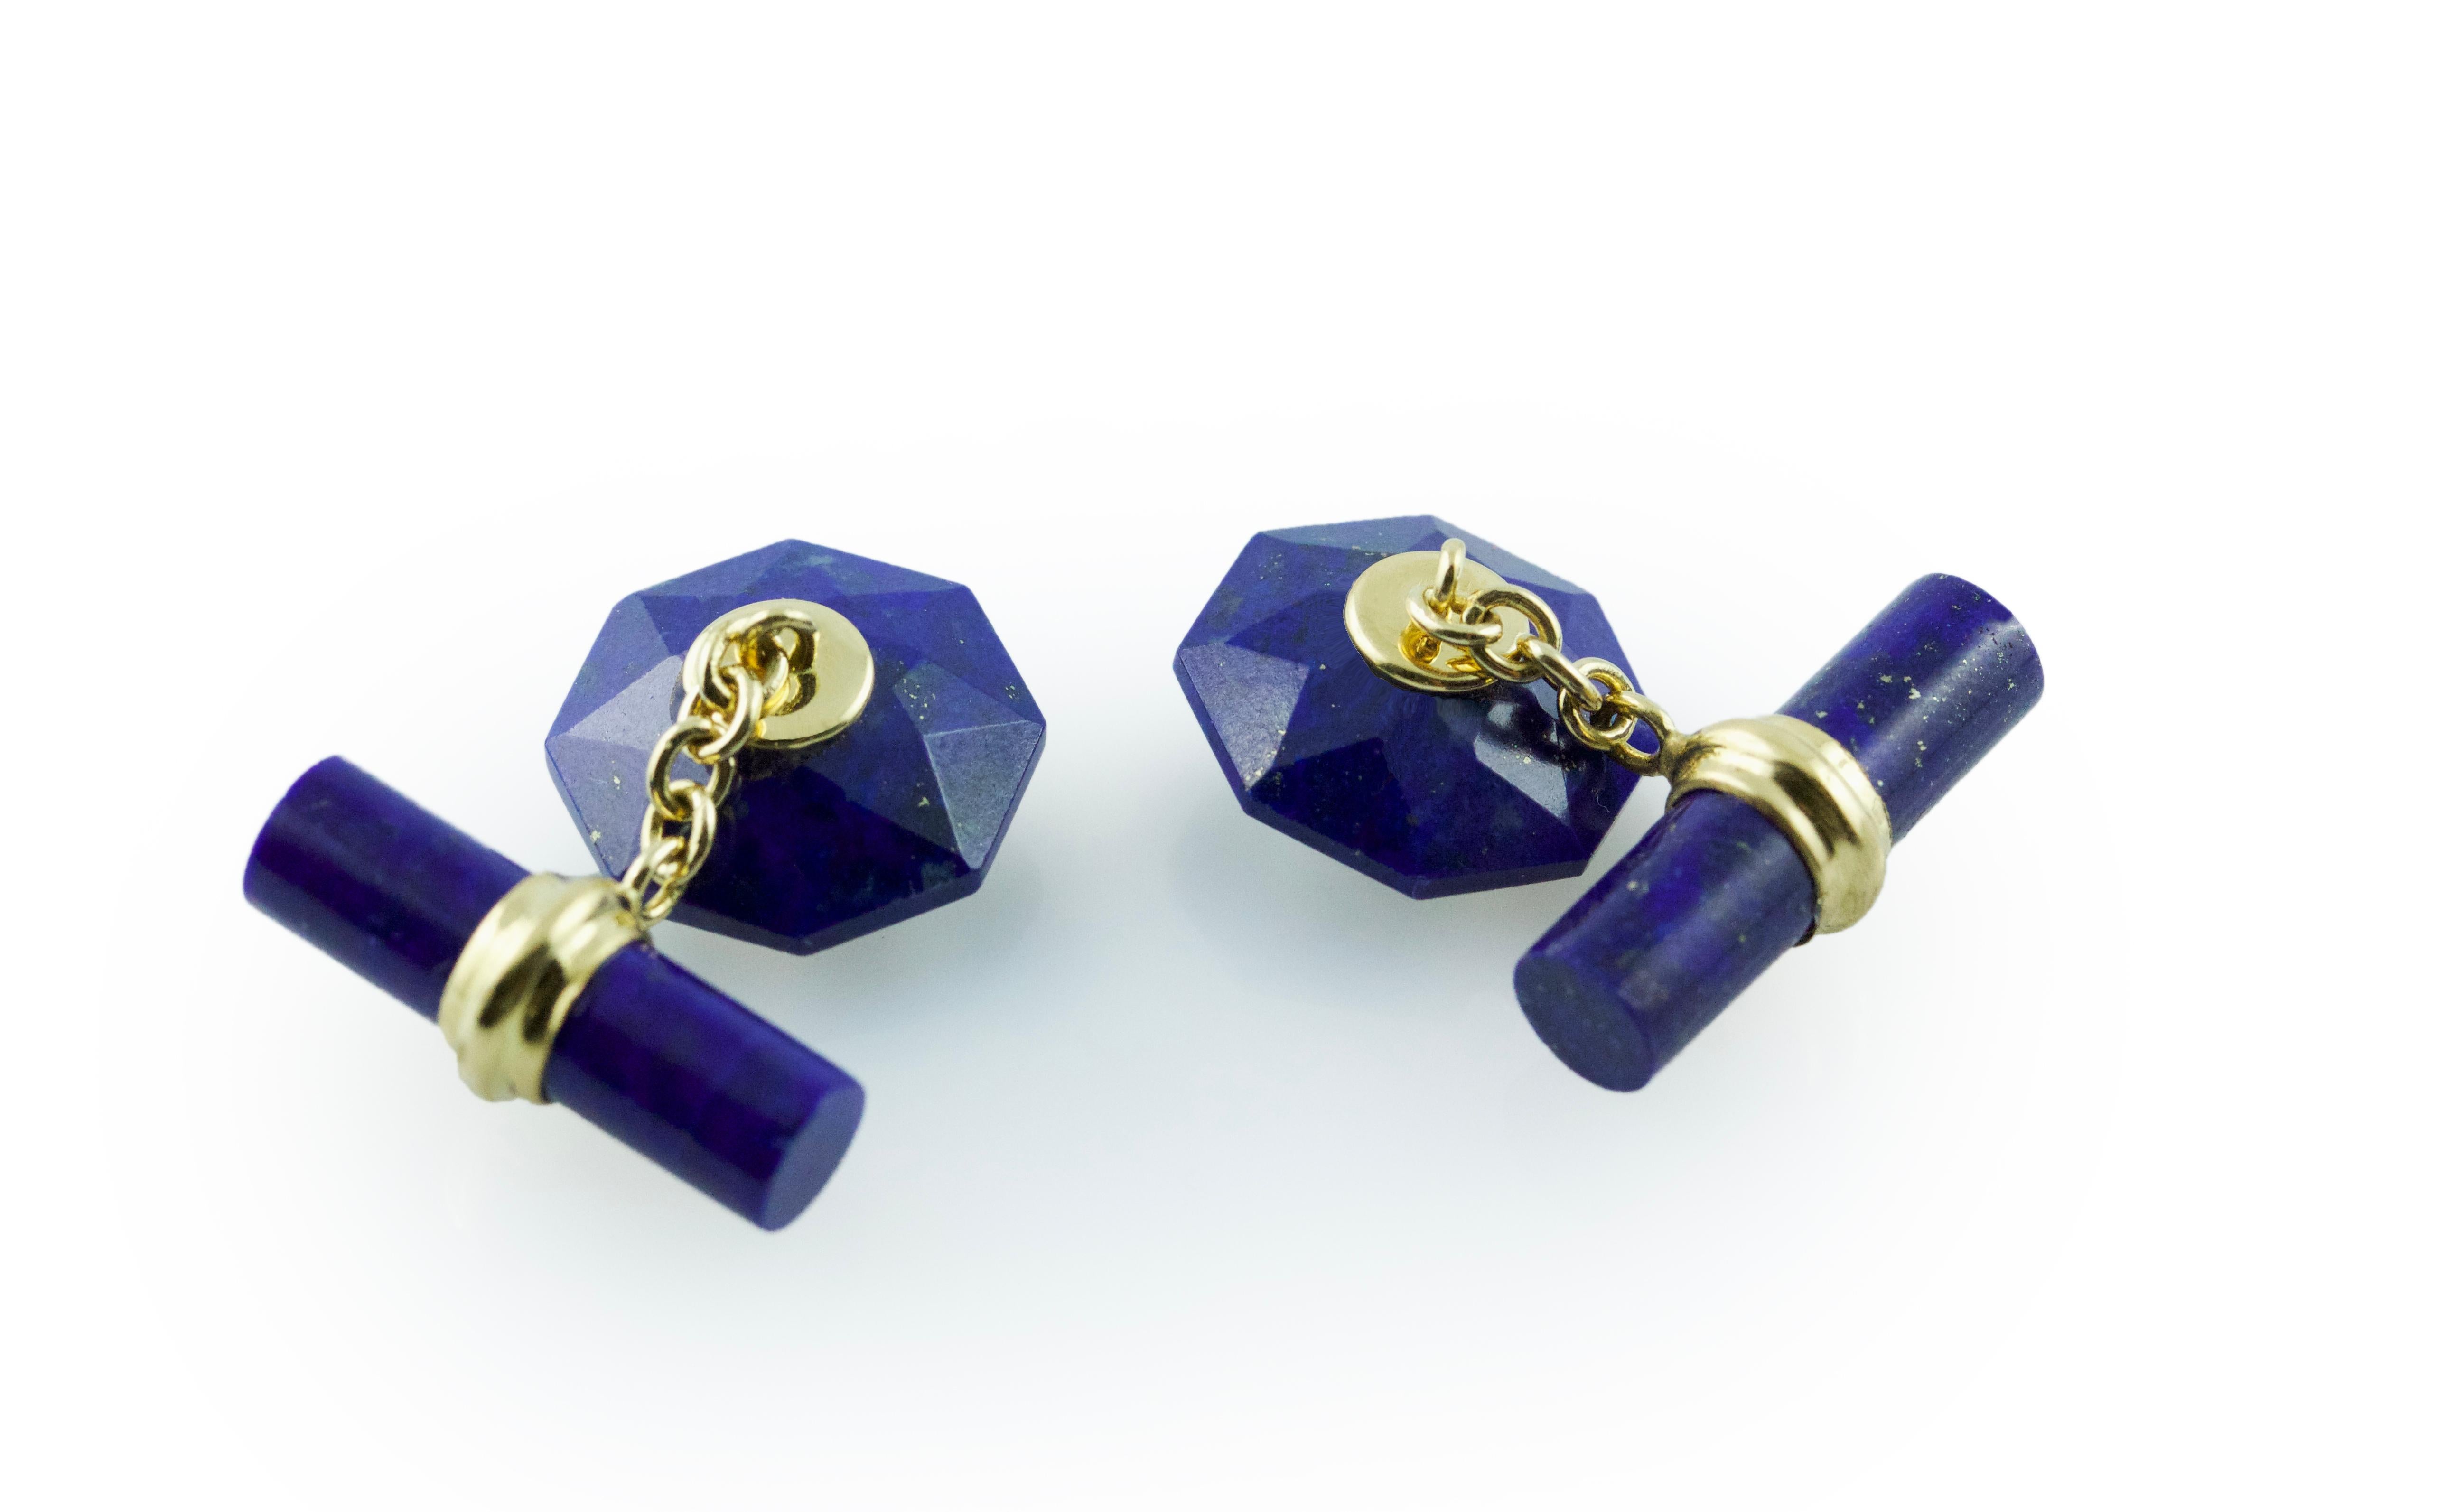 Le bleu saisissant du lapis-lazuli confère au design classique de ces boutons de manchette une touche de modernité. 
La face avant a la forme d'un octogone convexe, dont les nombreuses découpes reflètent magnifiquement la lumière, tandis que le